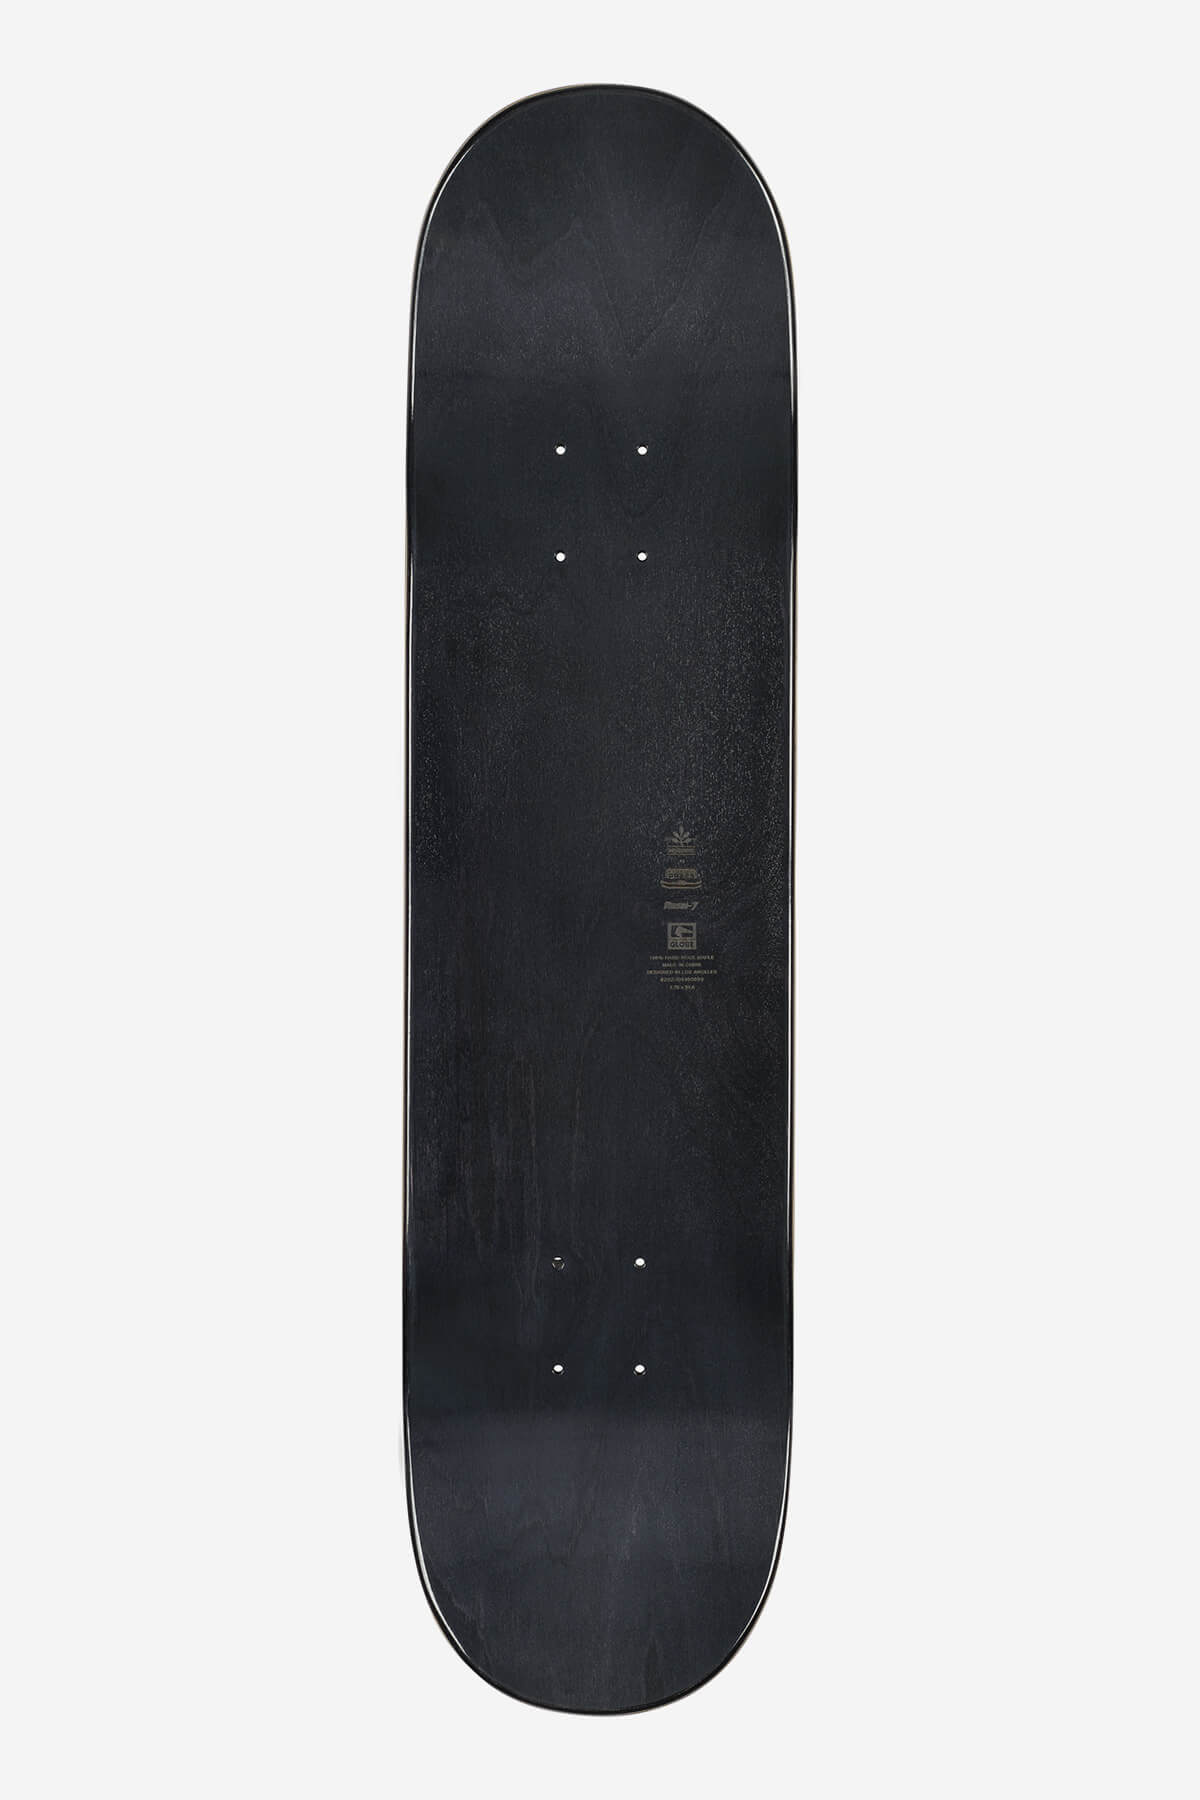 g1 lineform black 7.75" skateboard deck